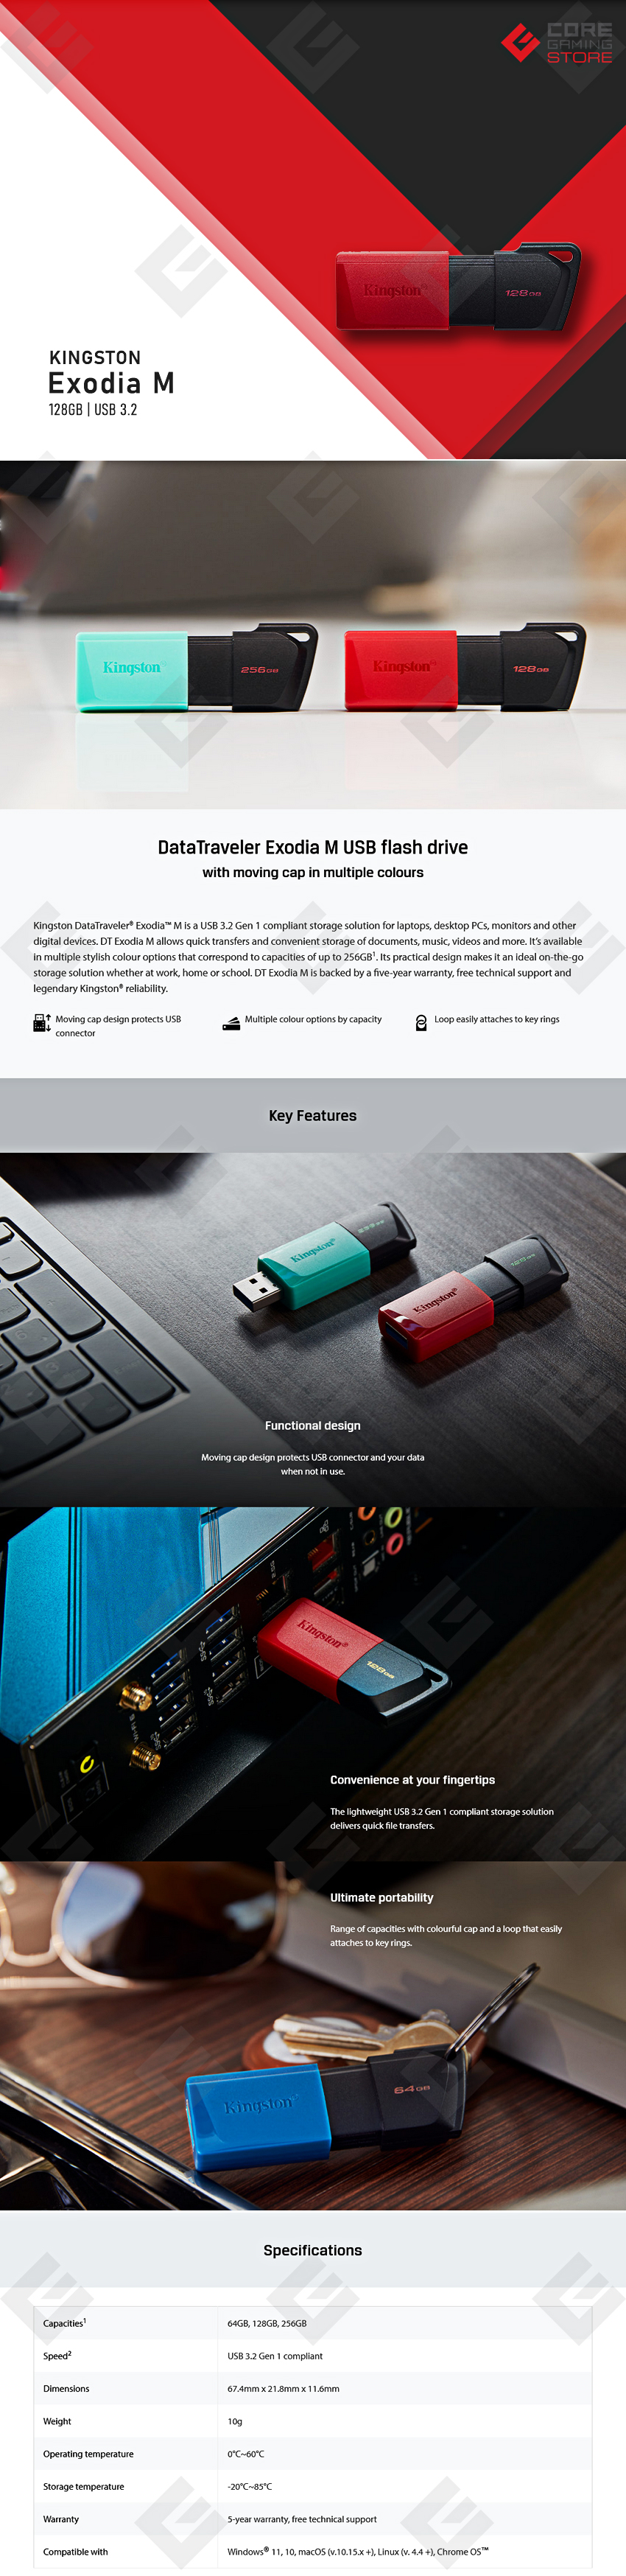 Memoria USB Kingston DataTraveler Exodia M 128GB, Negra con Rojo, USB 3.2 - DTXM-128GB